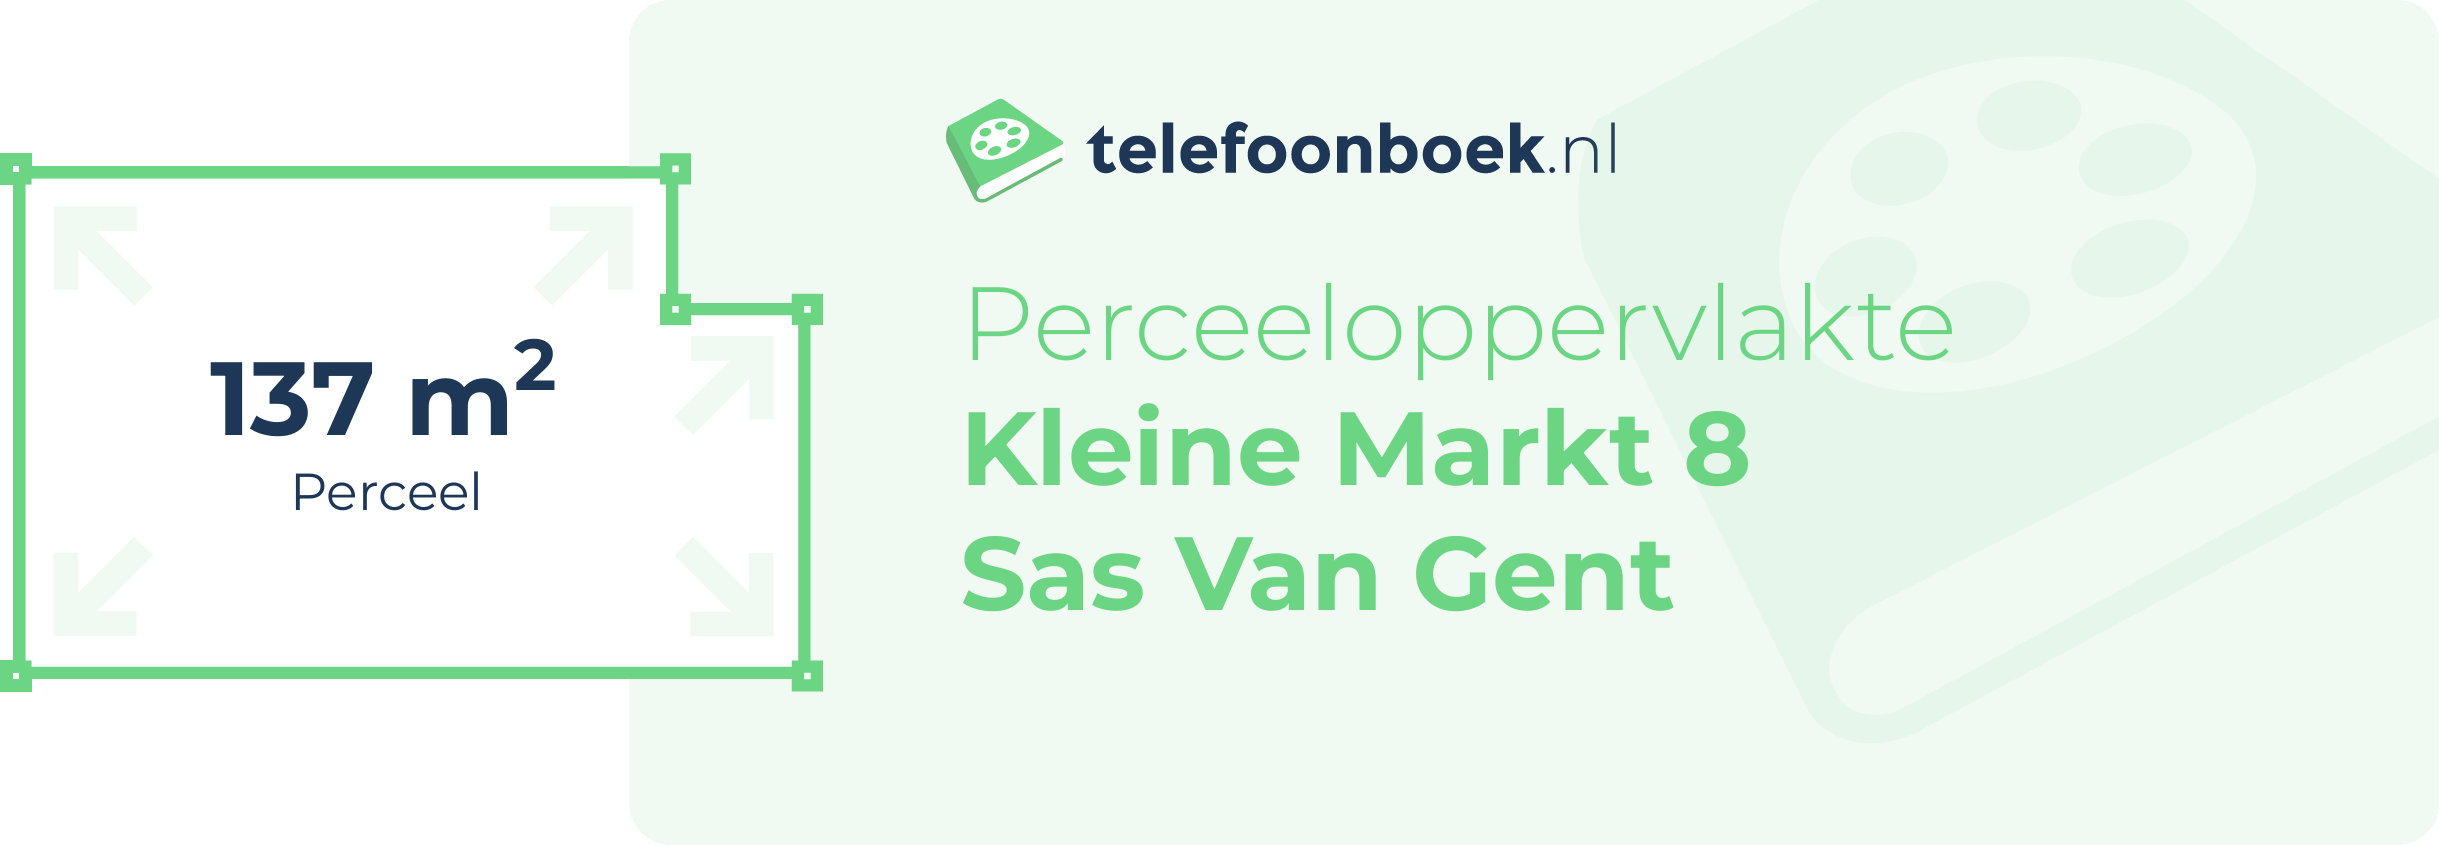 Perceeloppervlakte Kleine Markt 8 Sas Van Gent